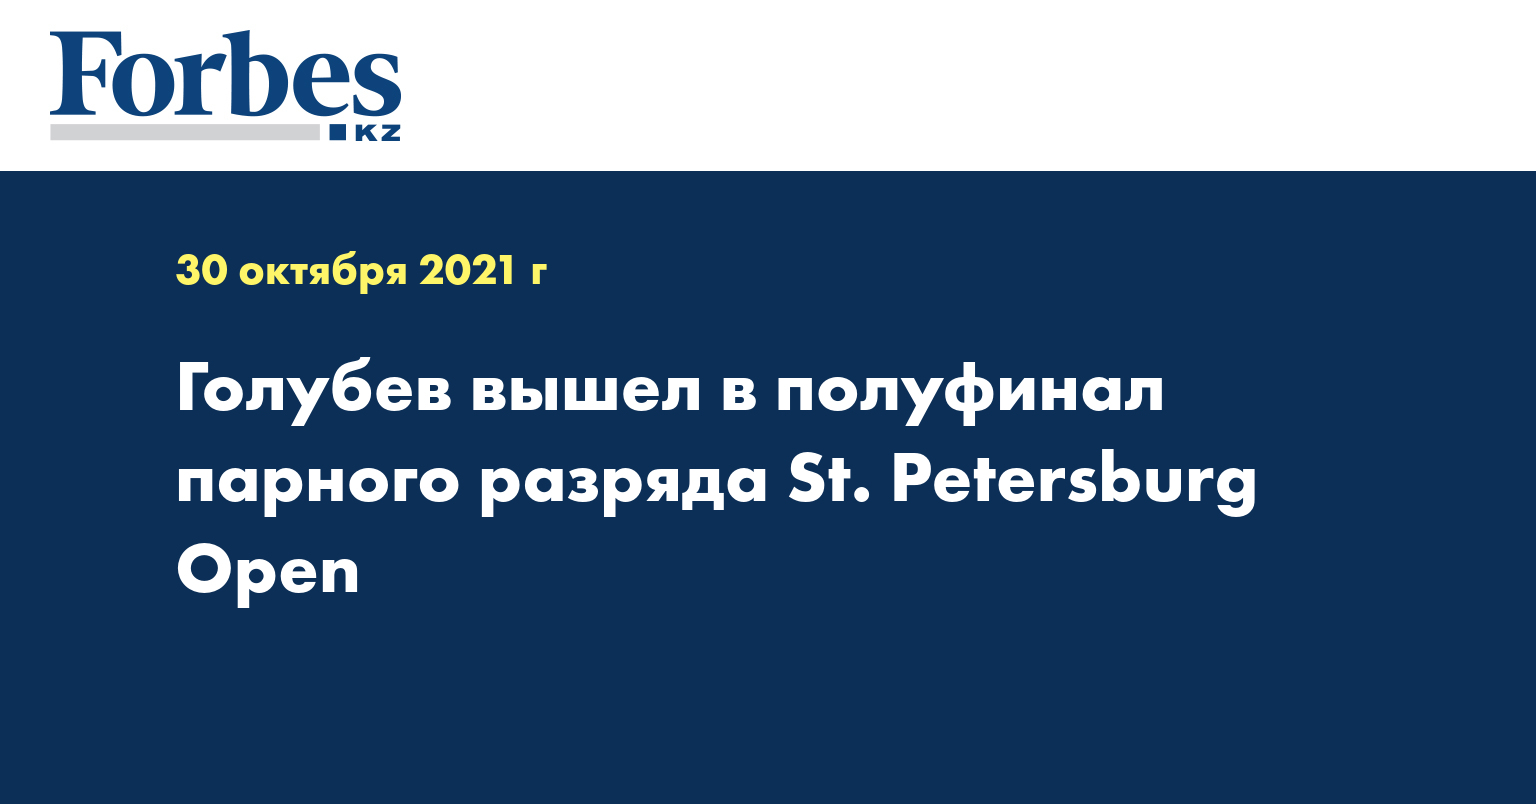 Голубев вышел в полуфинал парного разряда St. Petersburg Open